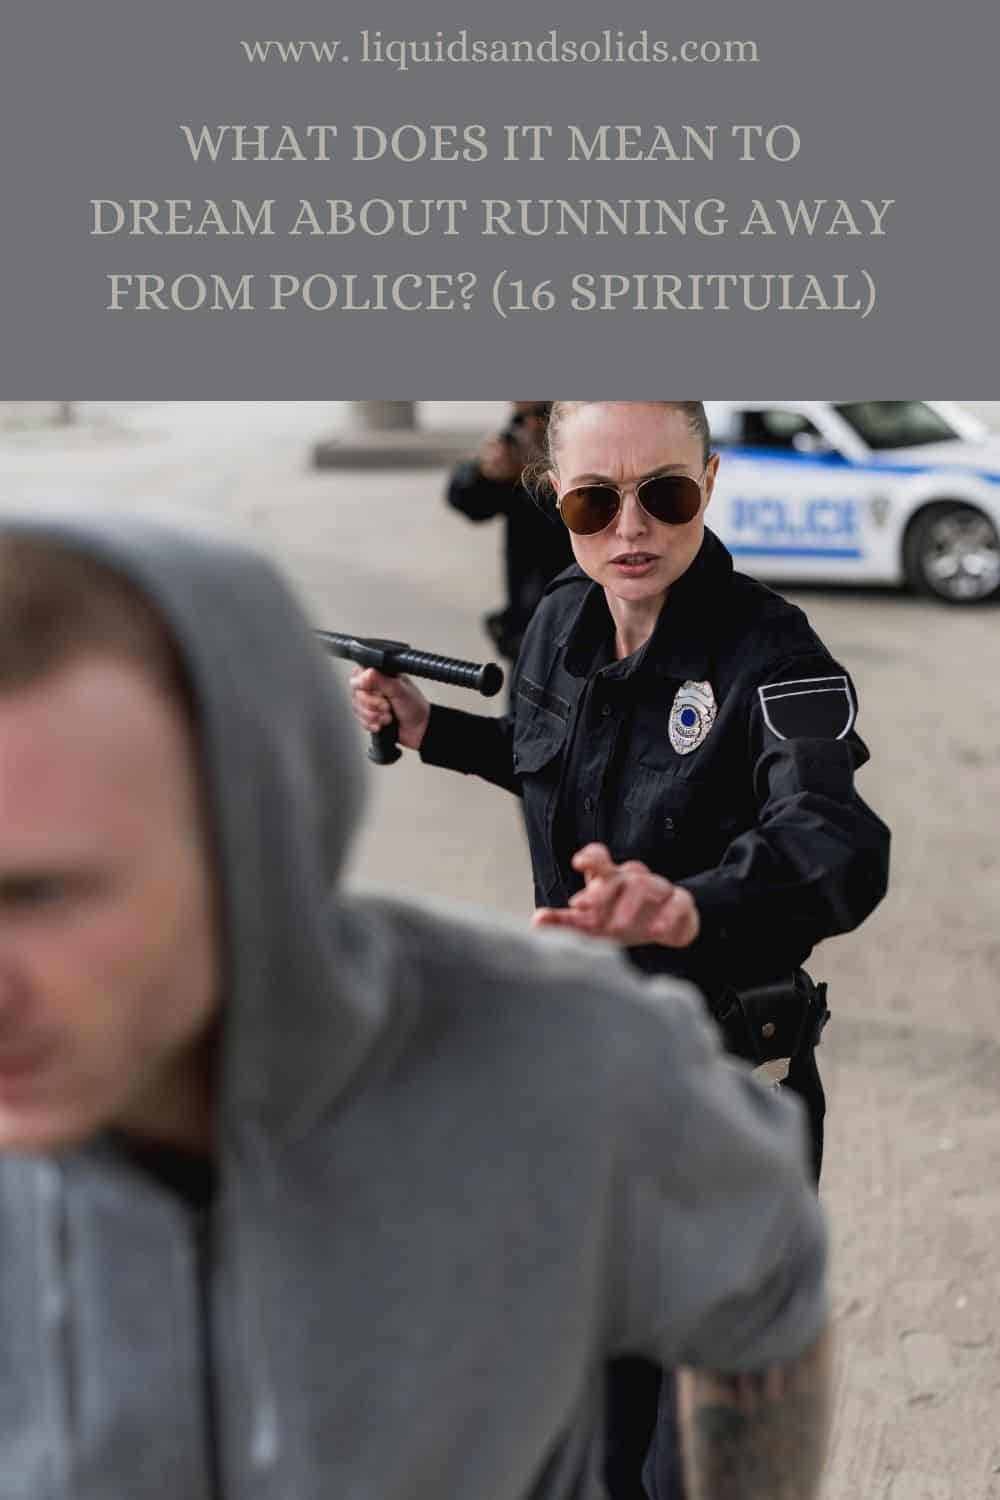  Álom a rendőrség elől való menekülésről? (16 spirituális jelentés)